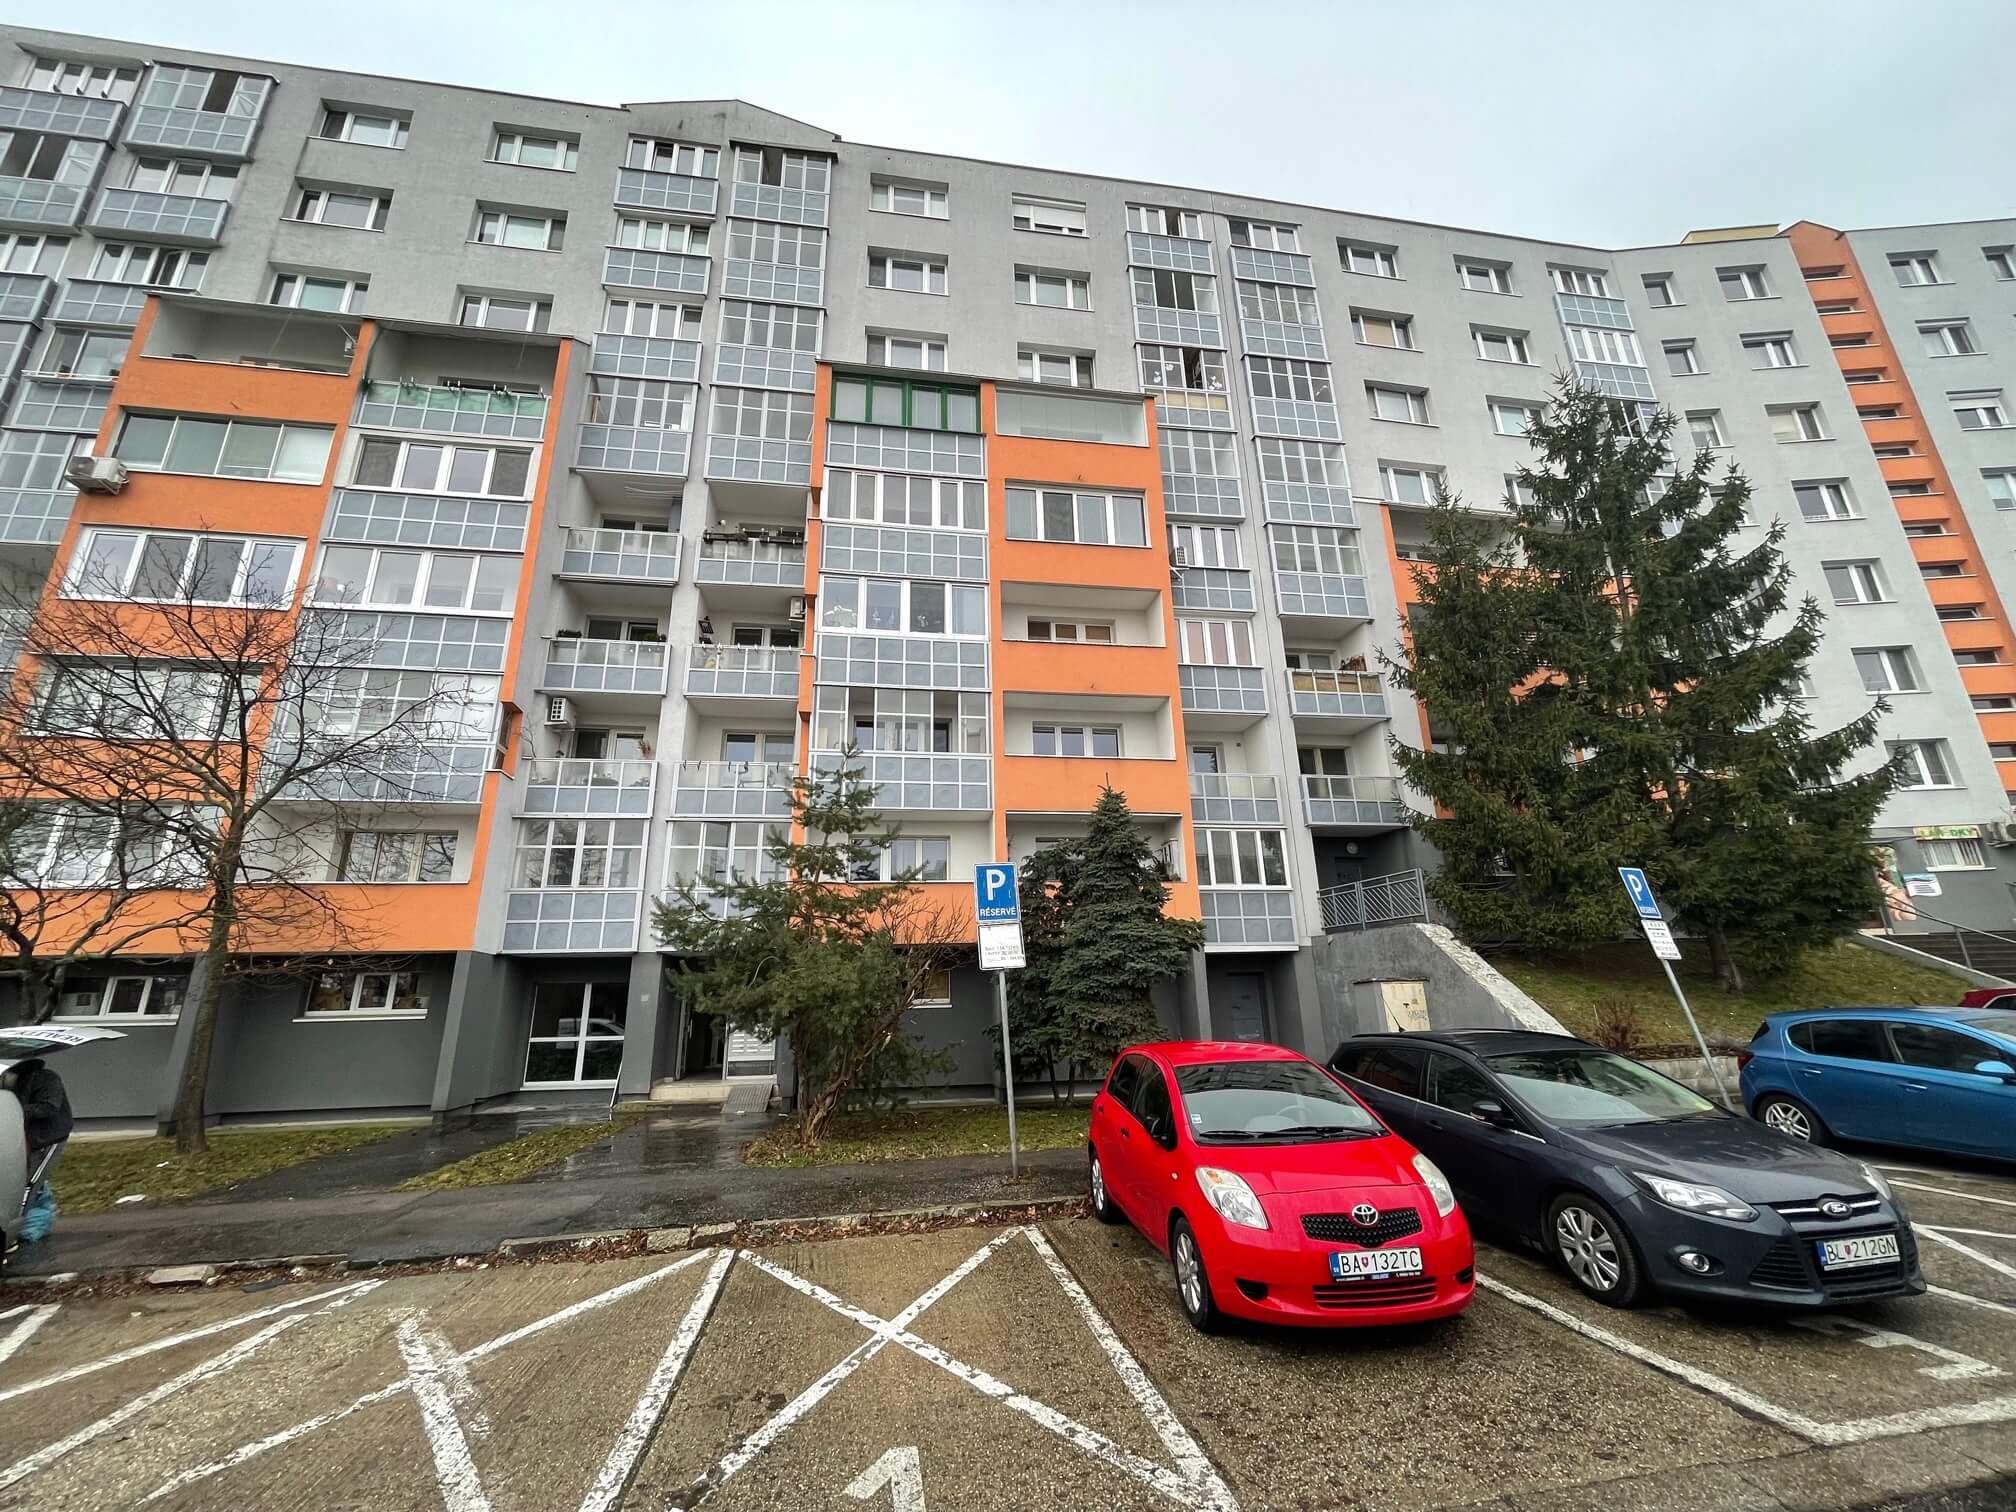 Prenajaté: Izby na prenájom v 3 izbovom byte, Karlovka, Kolísková 6 v Bratislave, 300€ izba, izba má 20m2 s  balkónom,-3